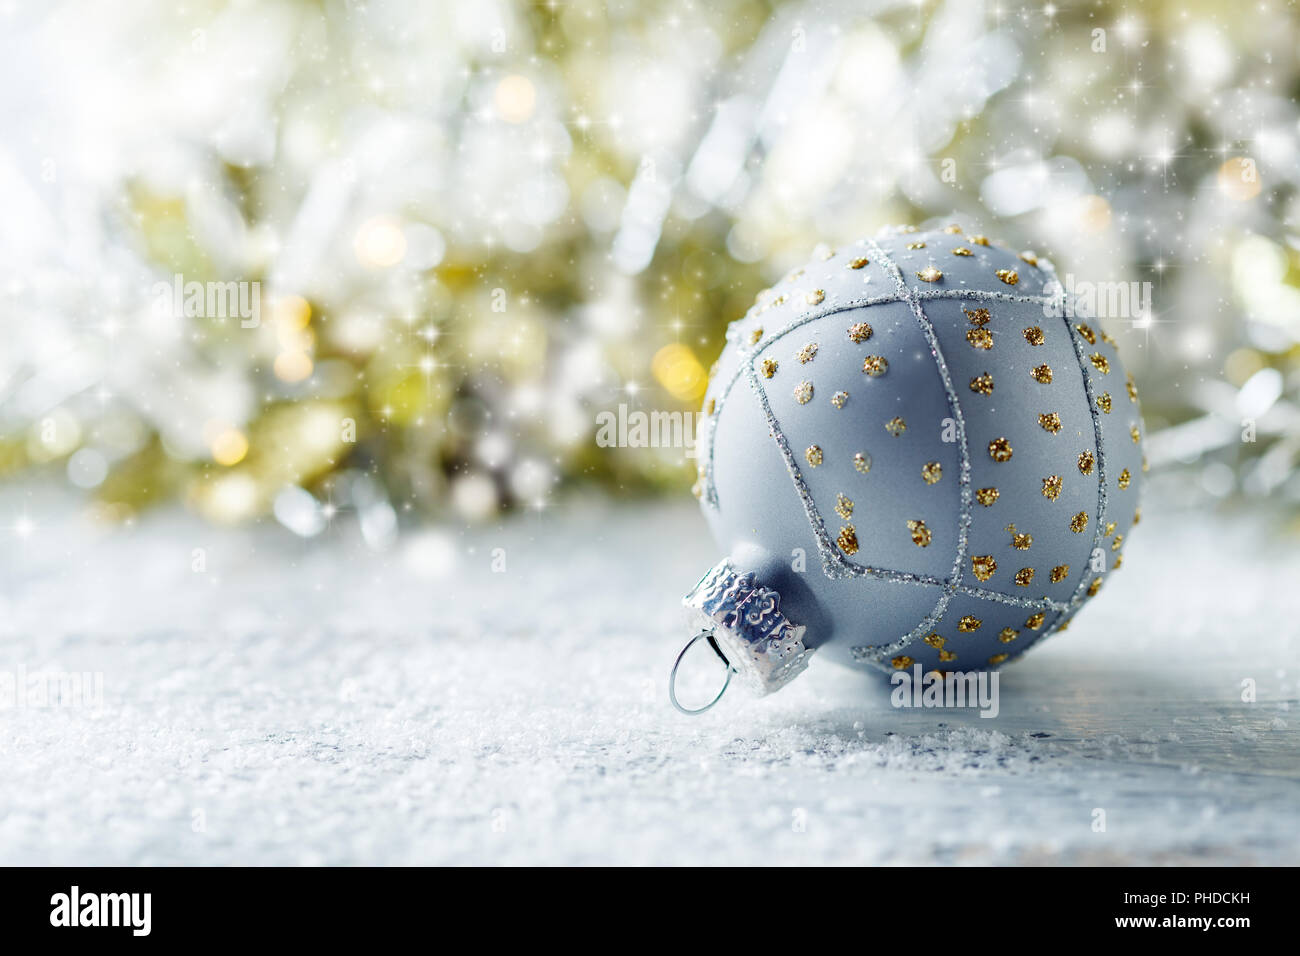 Silver Christmas ball closeup. Stock Photo